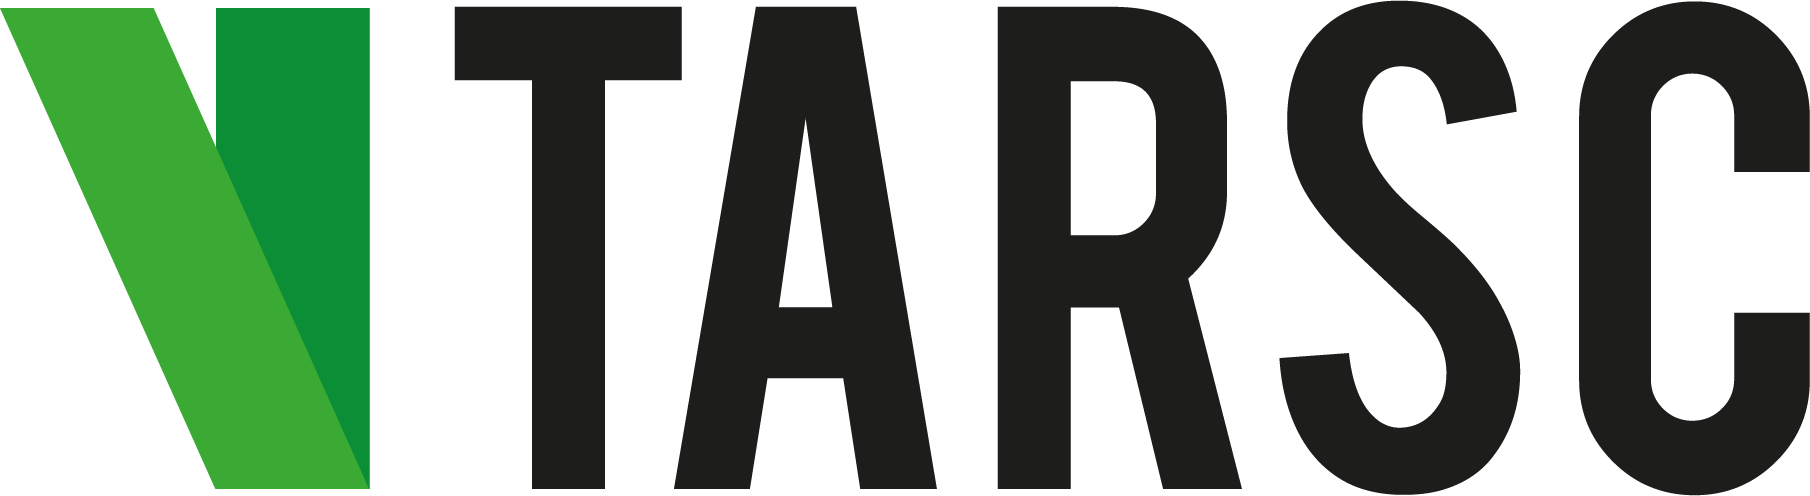 VTarsc Logo